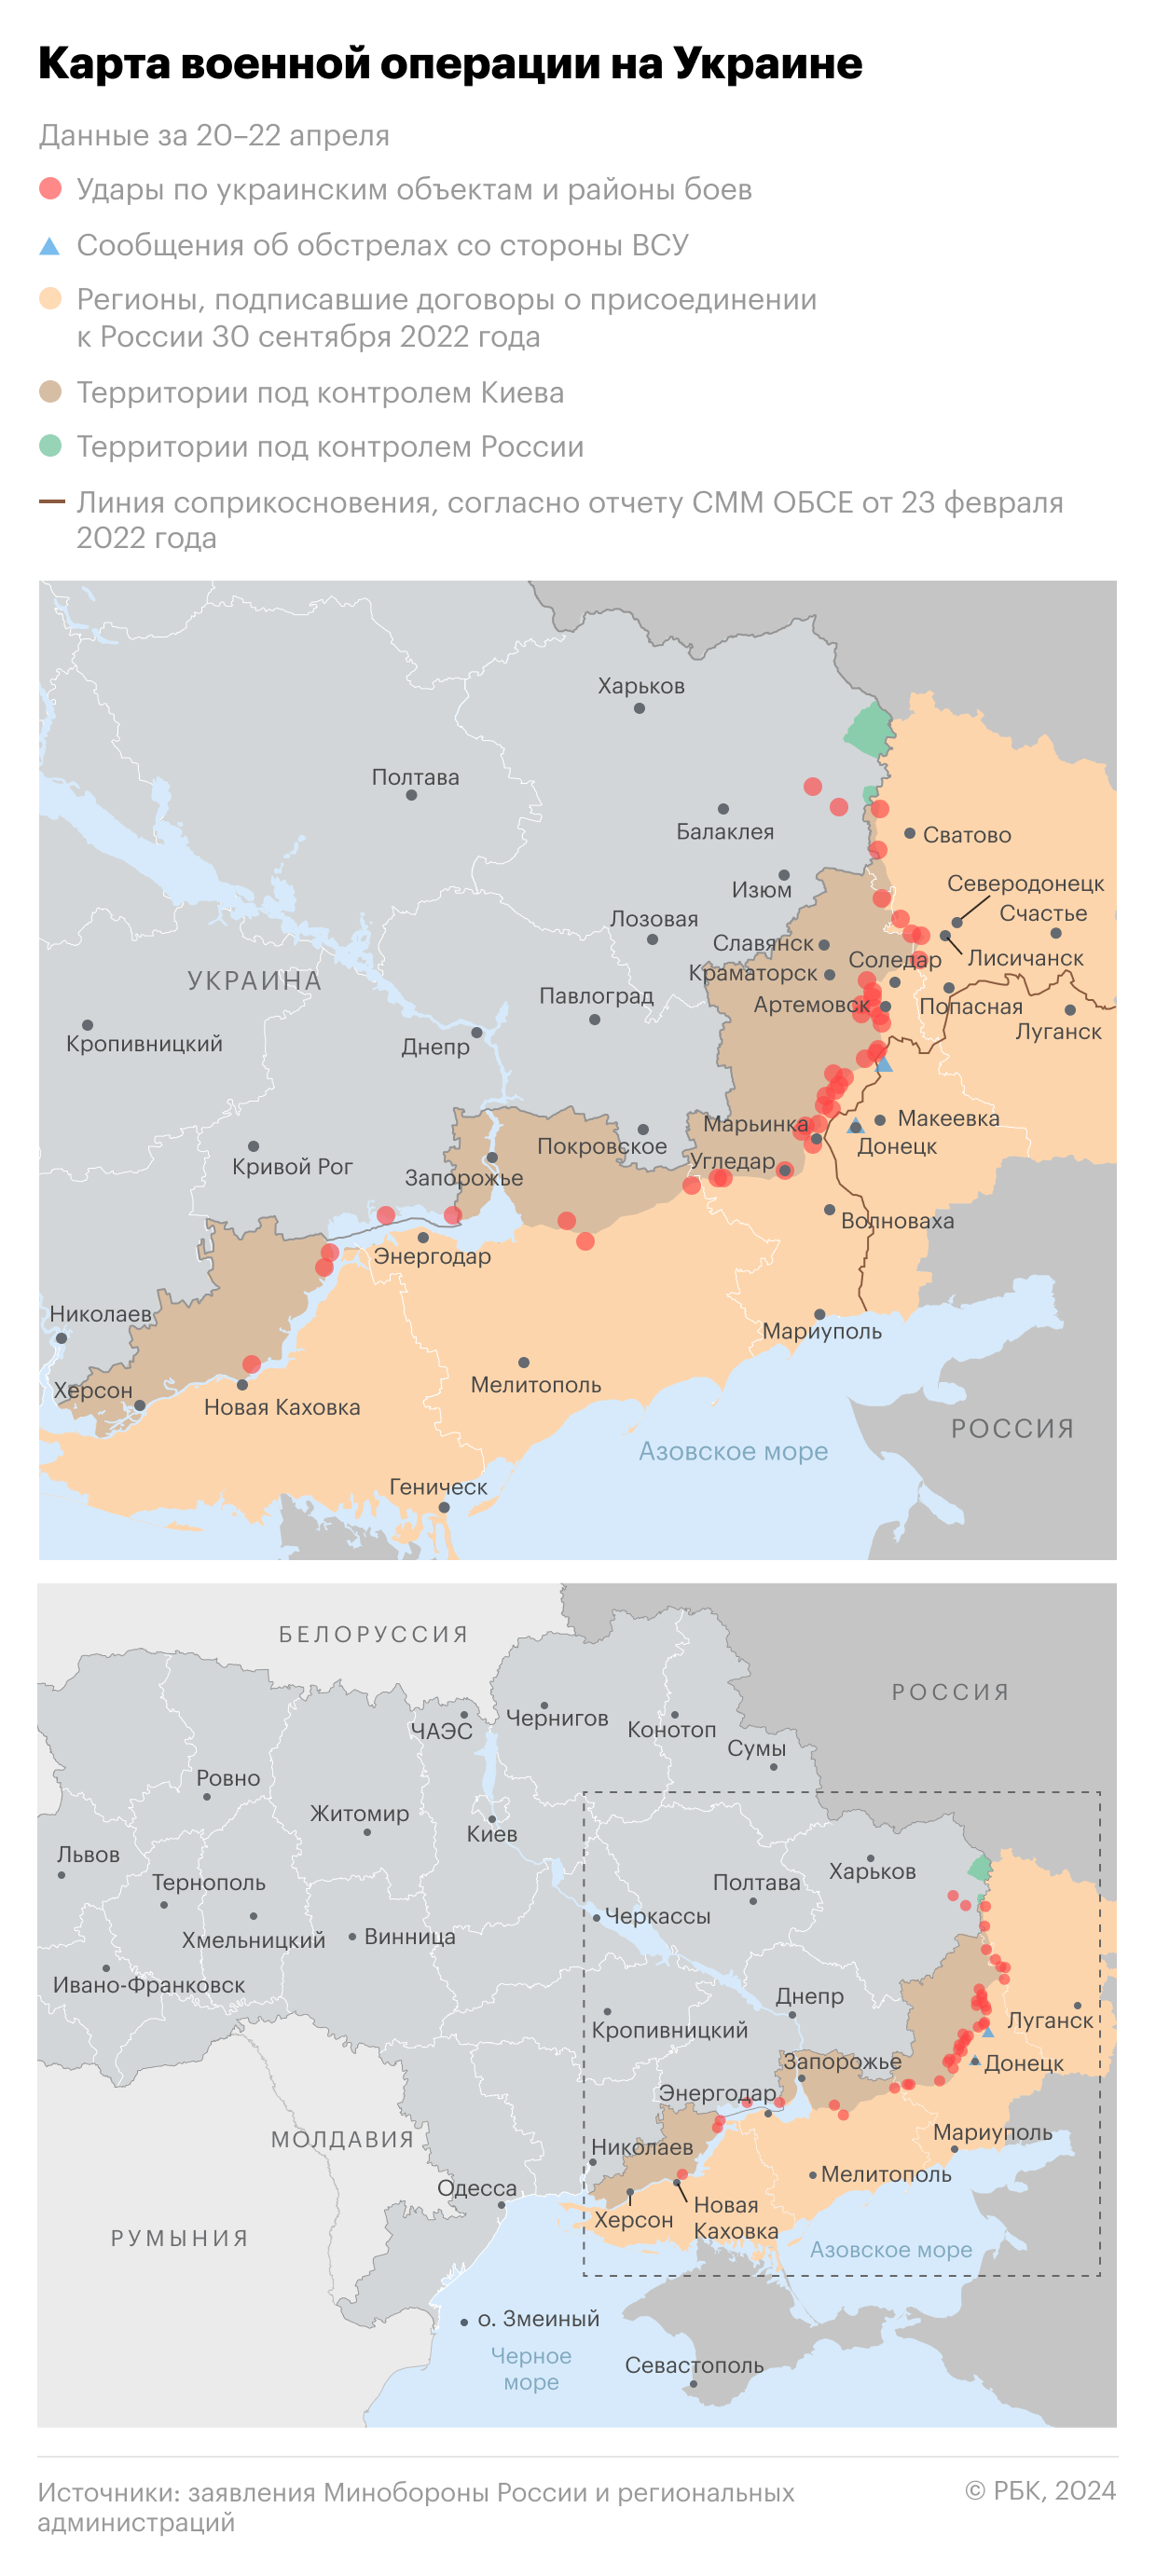 Военная операция на Украине. Карта на 18 апреля